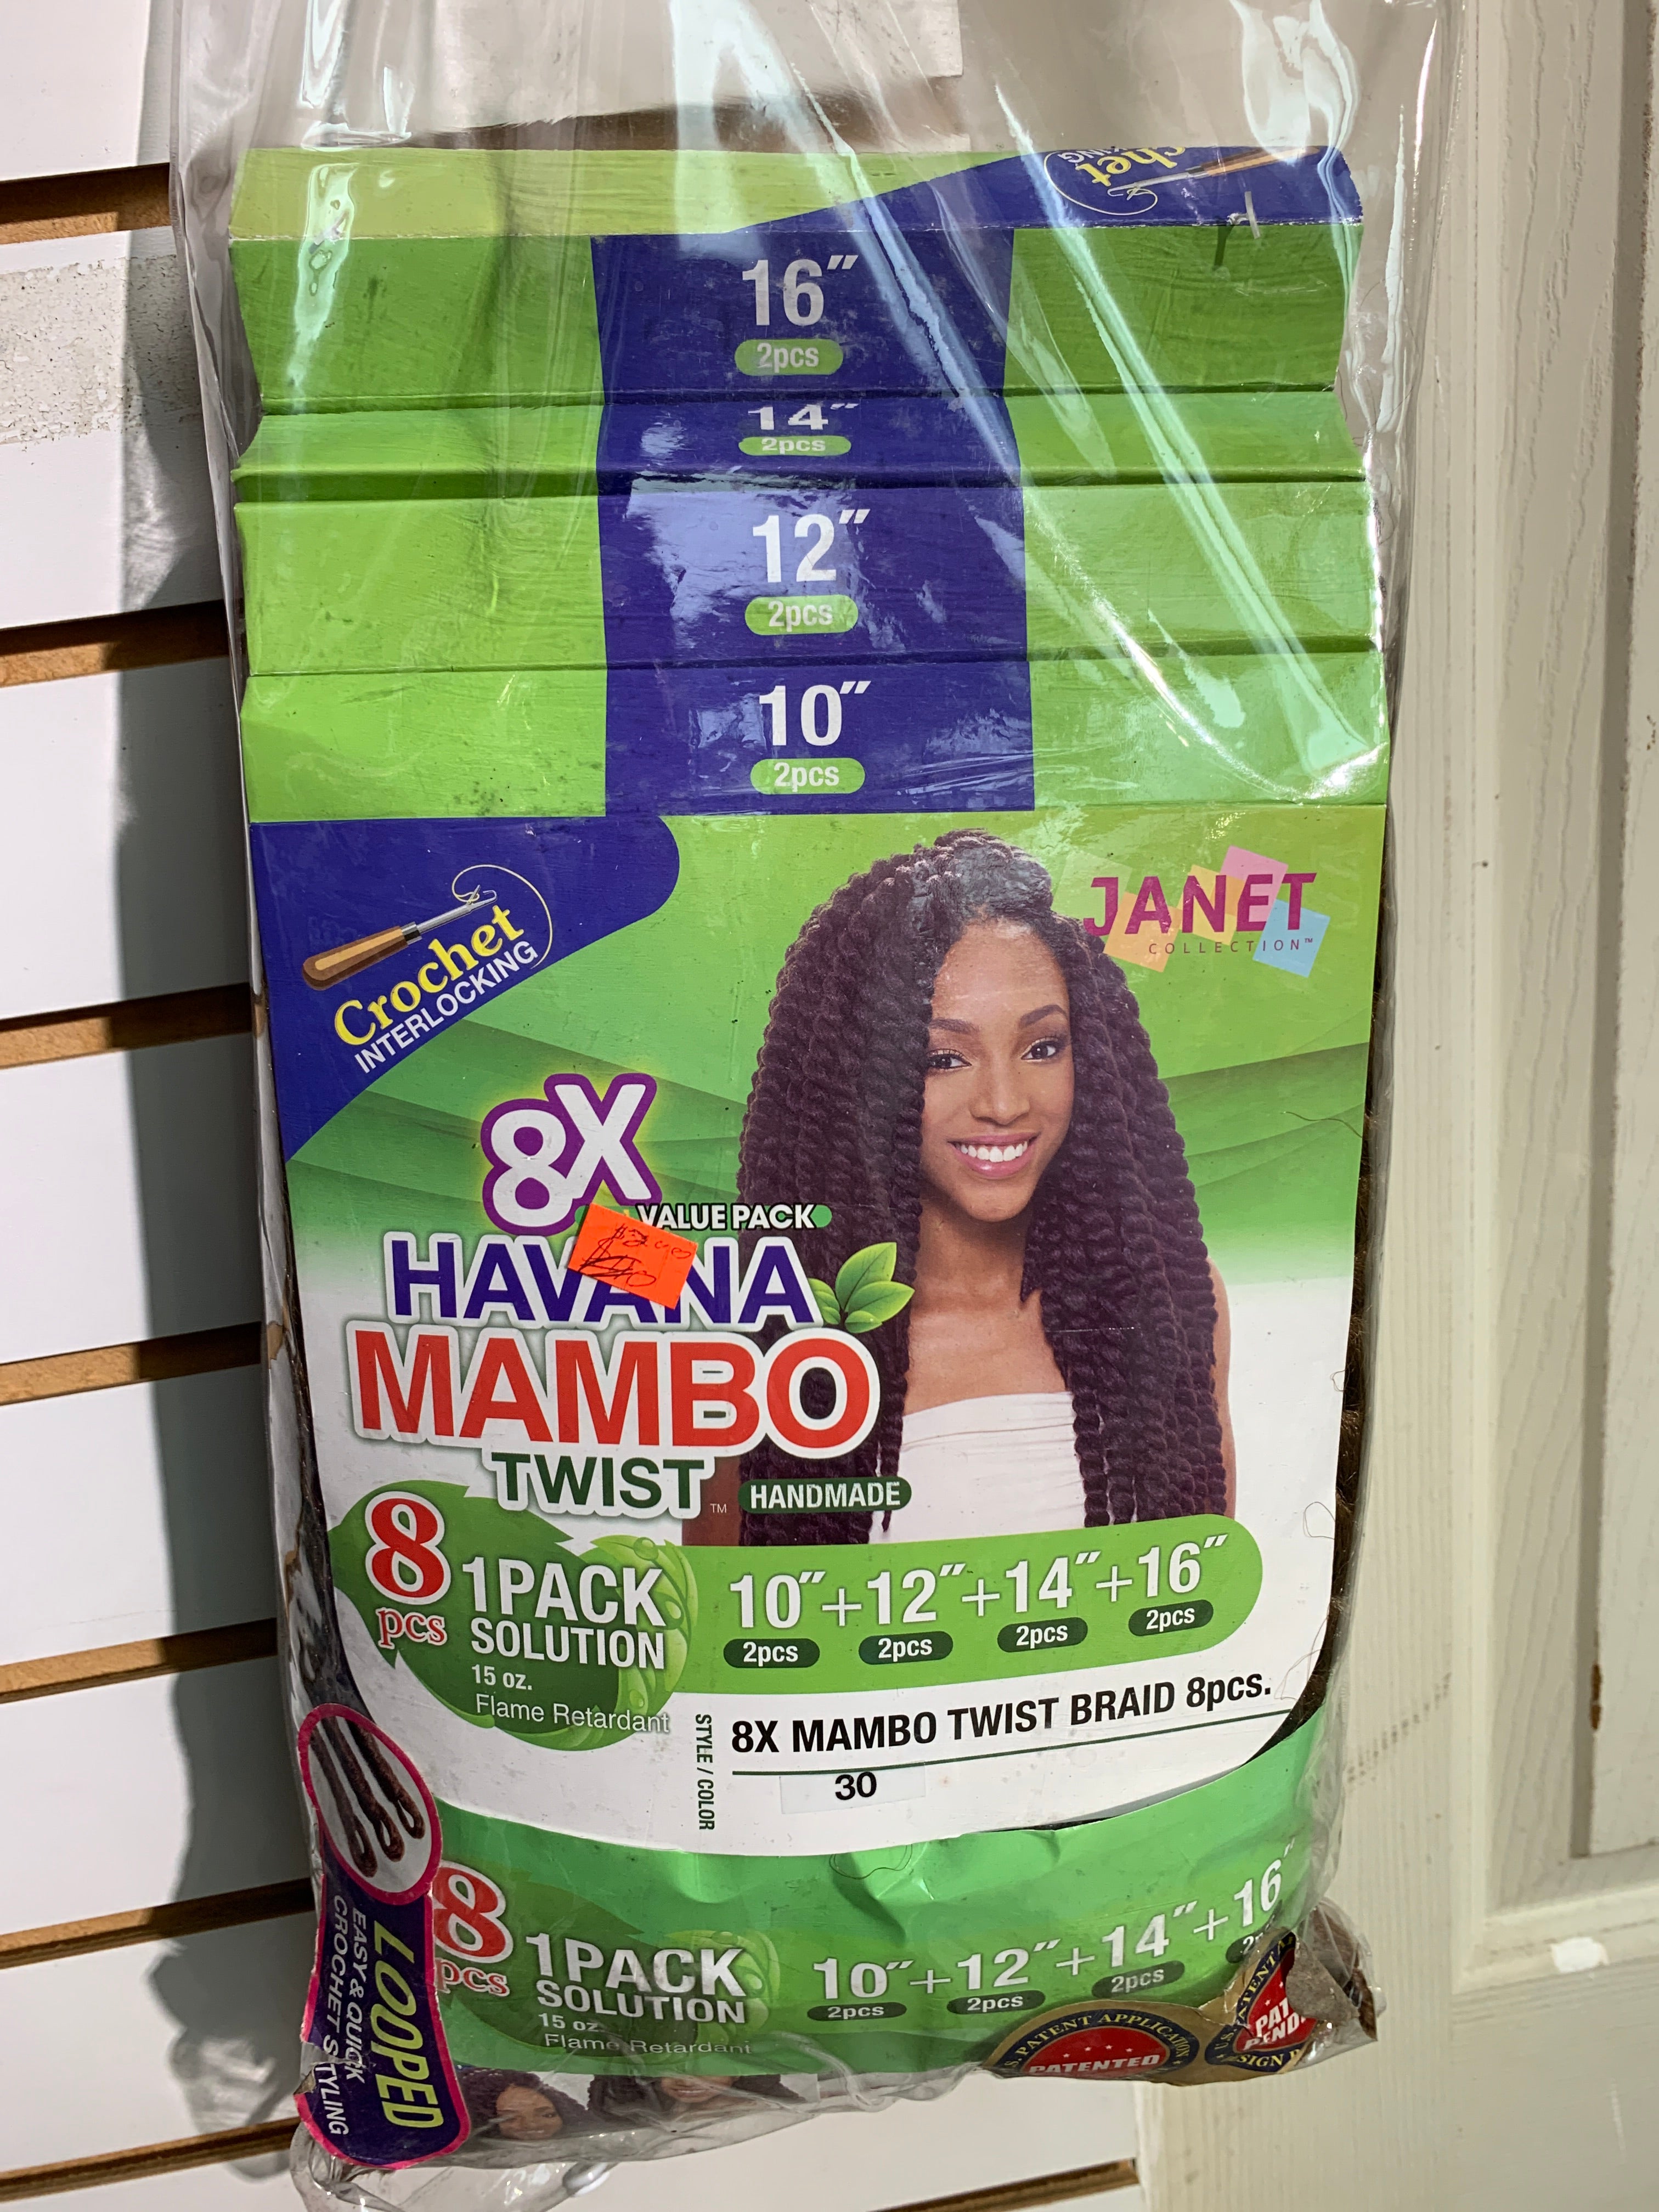 Janet 8x mambo twist braid 8pcs